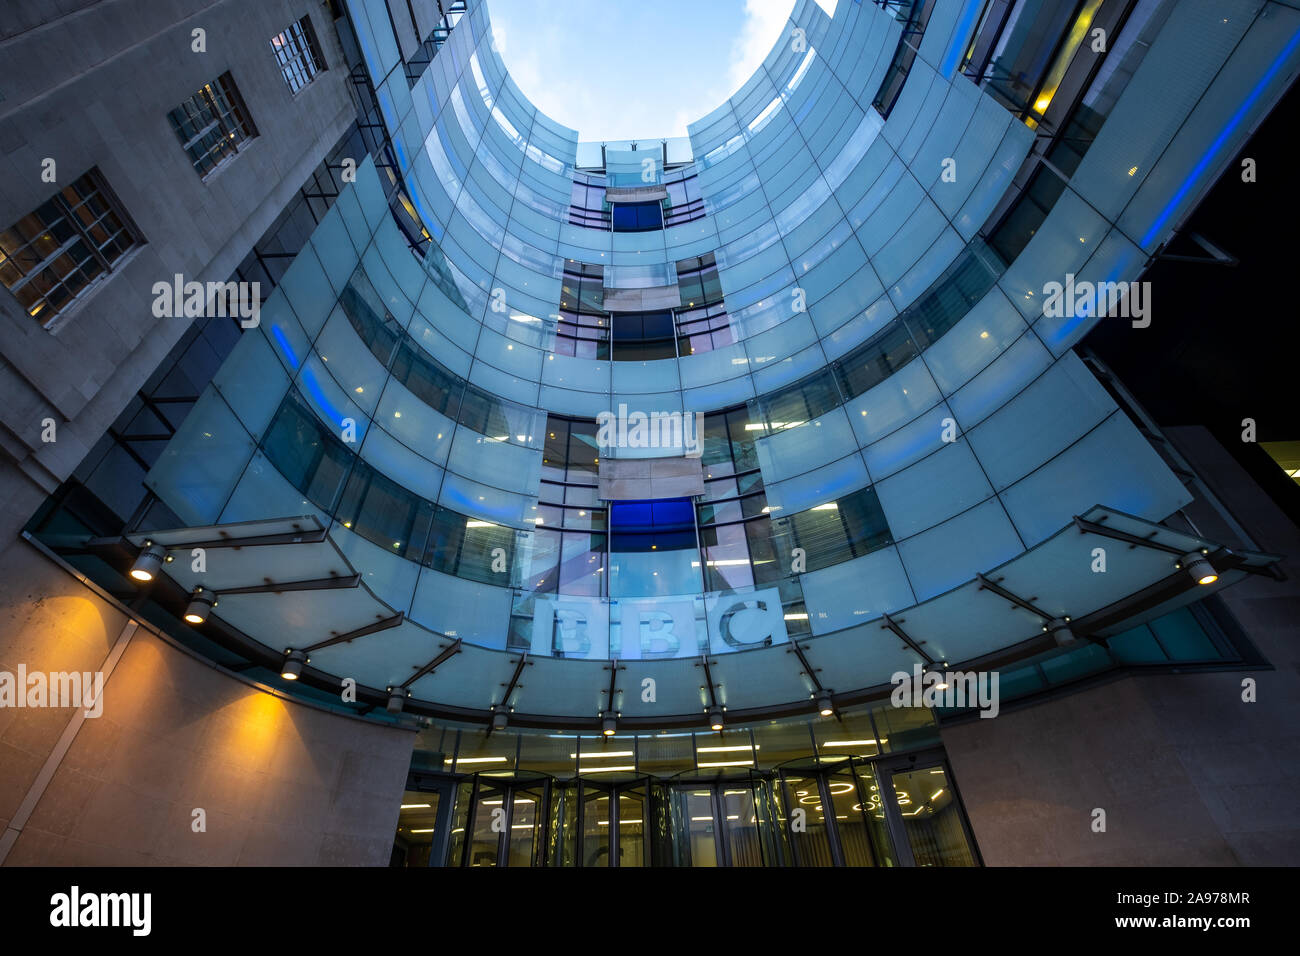 La BBC ou British Broadcasting Corporation siège sur Portland Place- un monde célèbre British radiodiffuseur de service public Banque D'Images